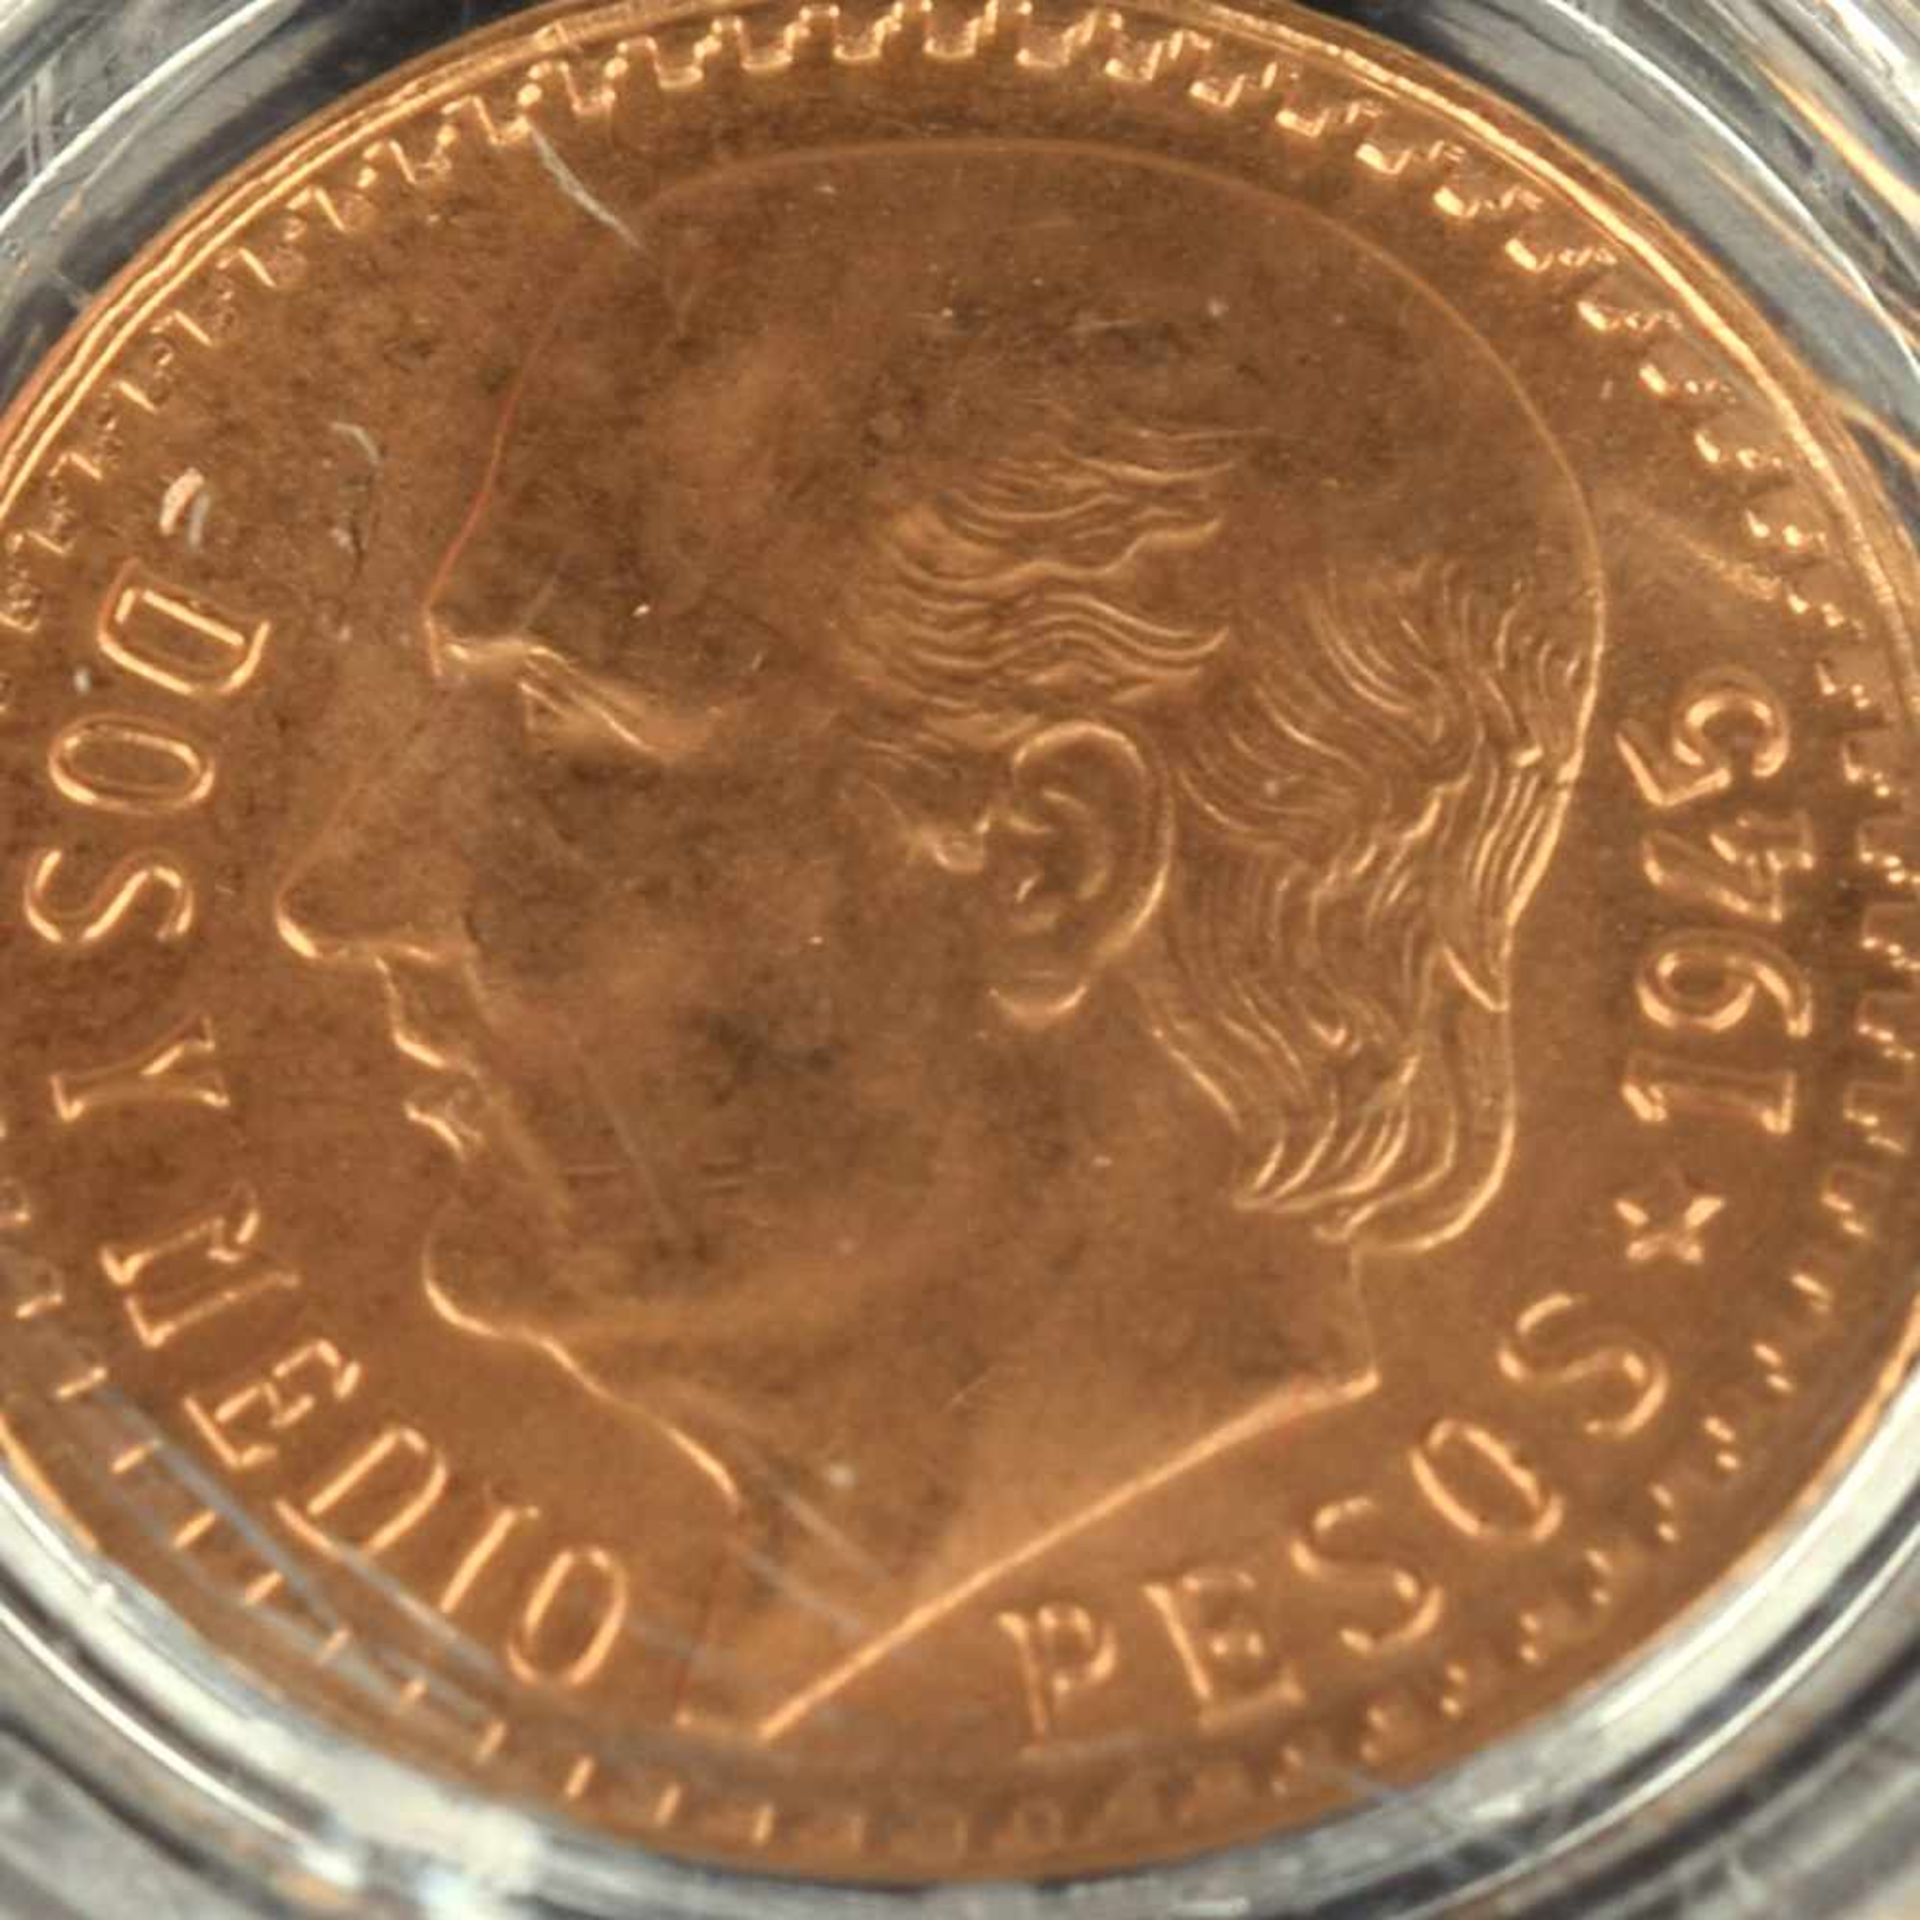 Goldmünze Mexiko - Centenario 2,5 Pesos in Gold, 900/1000, D ca. 15,5 mm, 2,083 g, av. Miguel